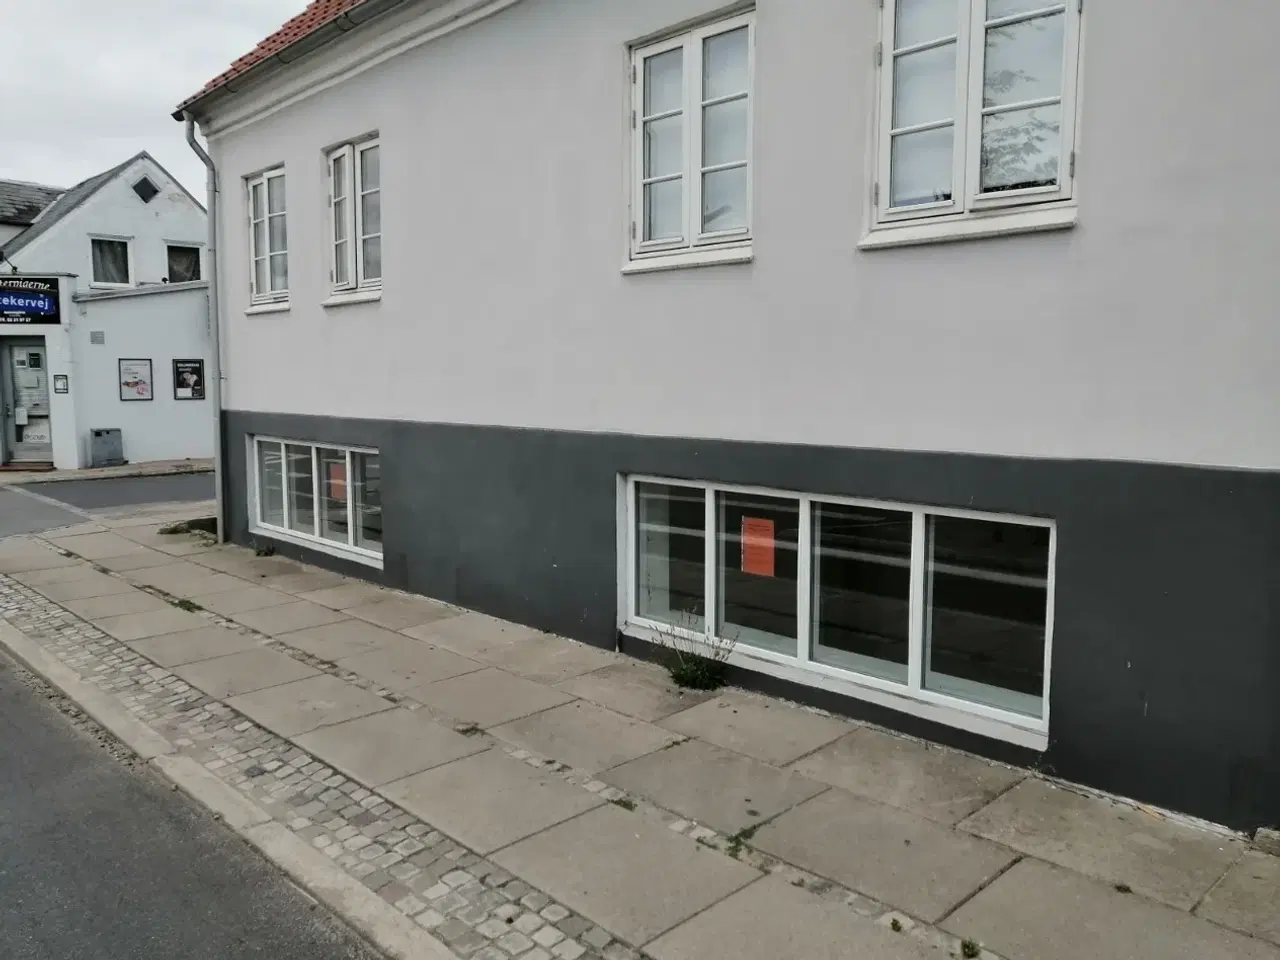 Billede 5 - Butikslokale udlejes i Svendborg!